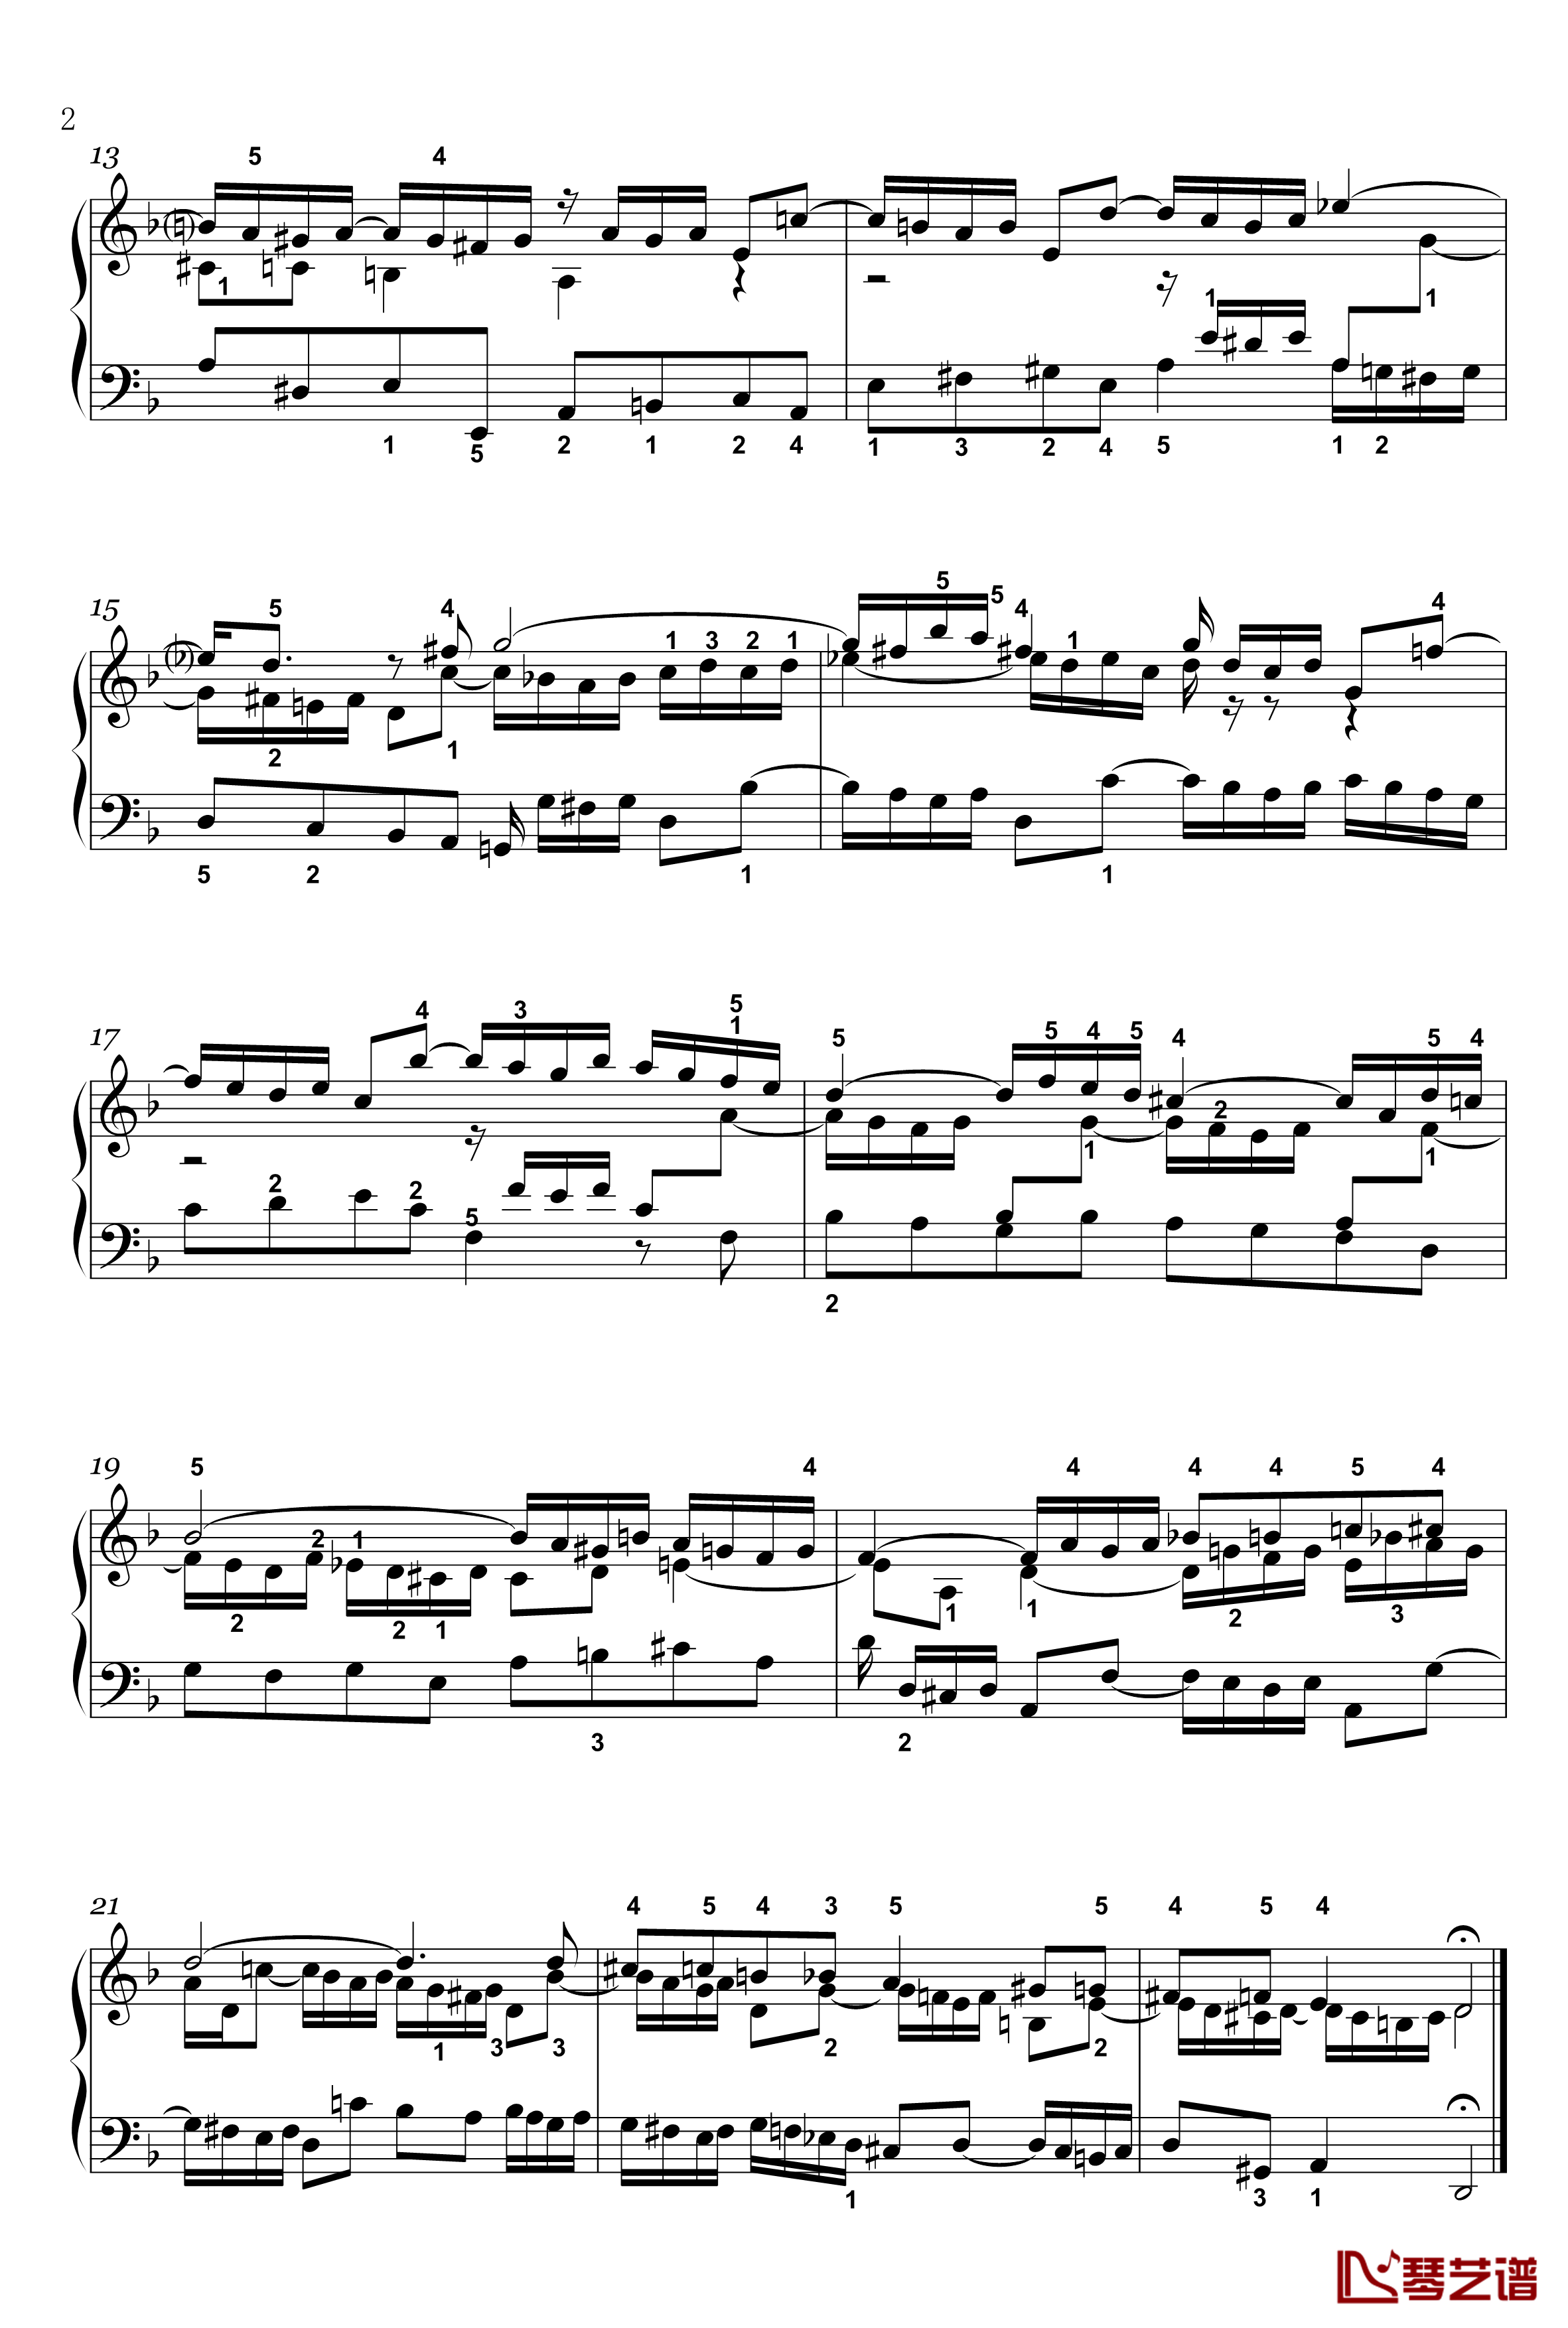 三部创意曲钢琴谱-4-BWV-790-世界名曲2